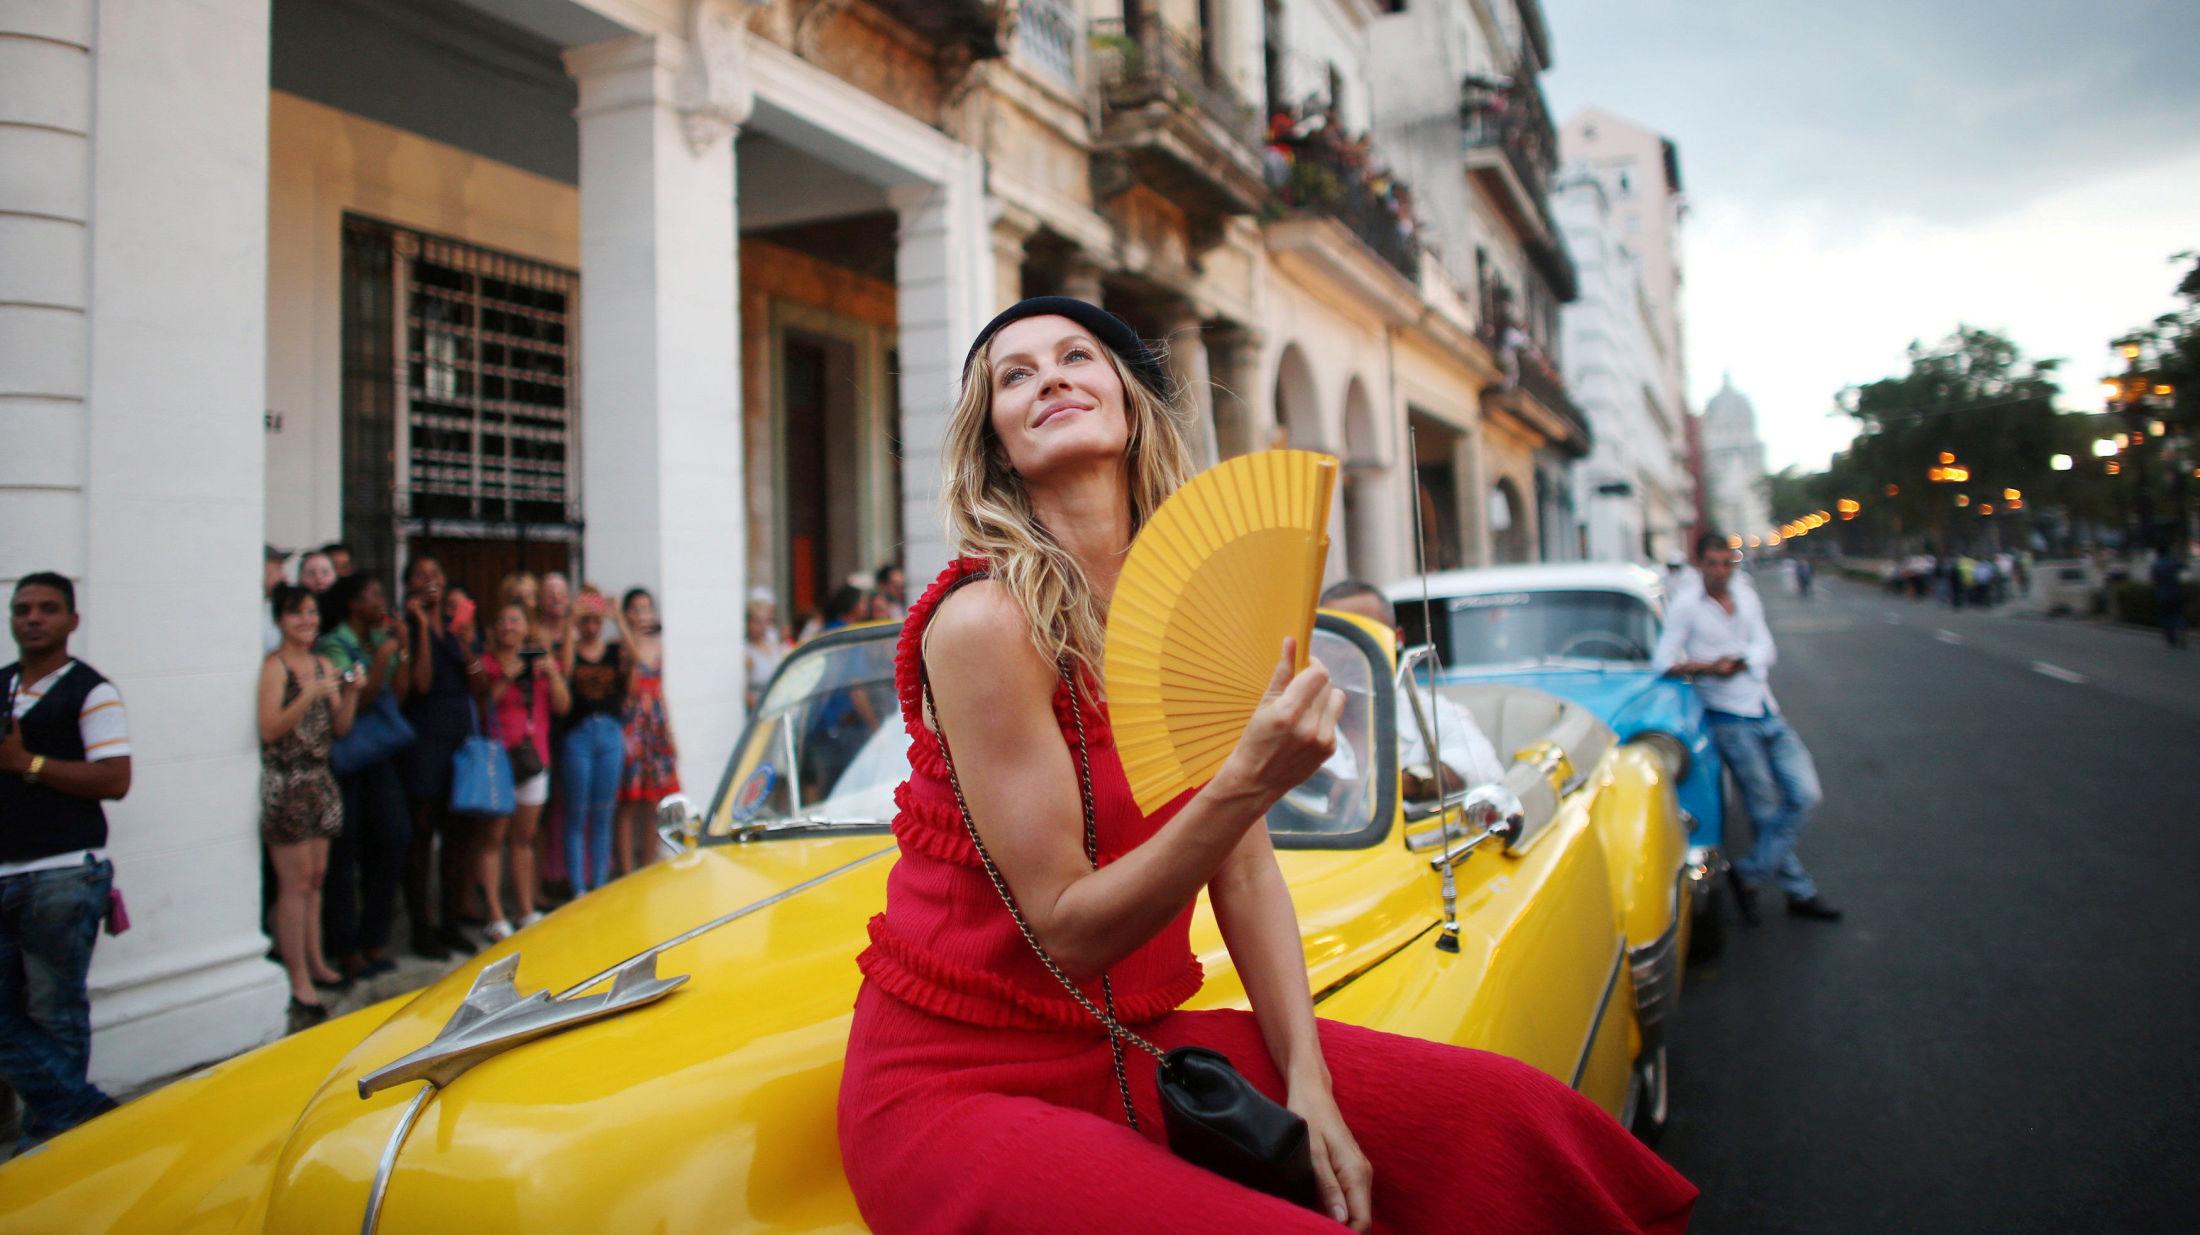 PÅ SIDELINJEN: Supermodell Gisele Bundchen fulgte for én gangs skyld catwalk-showet fra tilskuerplass - for anledningen en vintage bil. Foto: Reuters